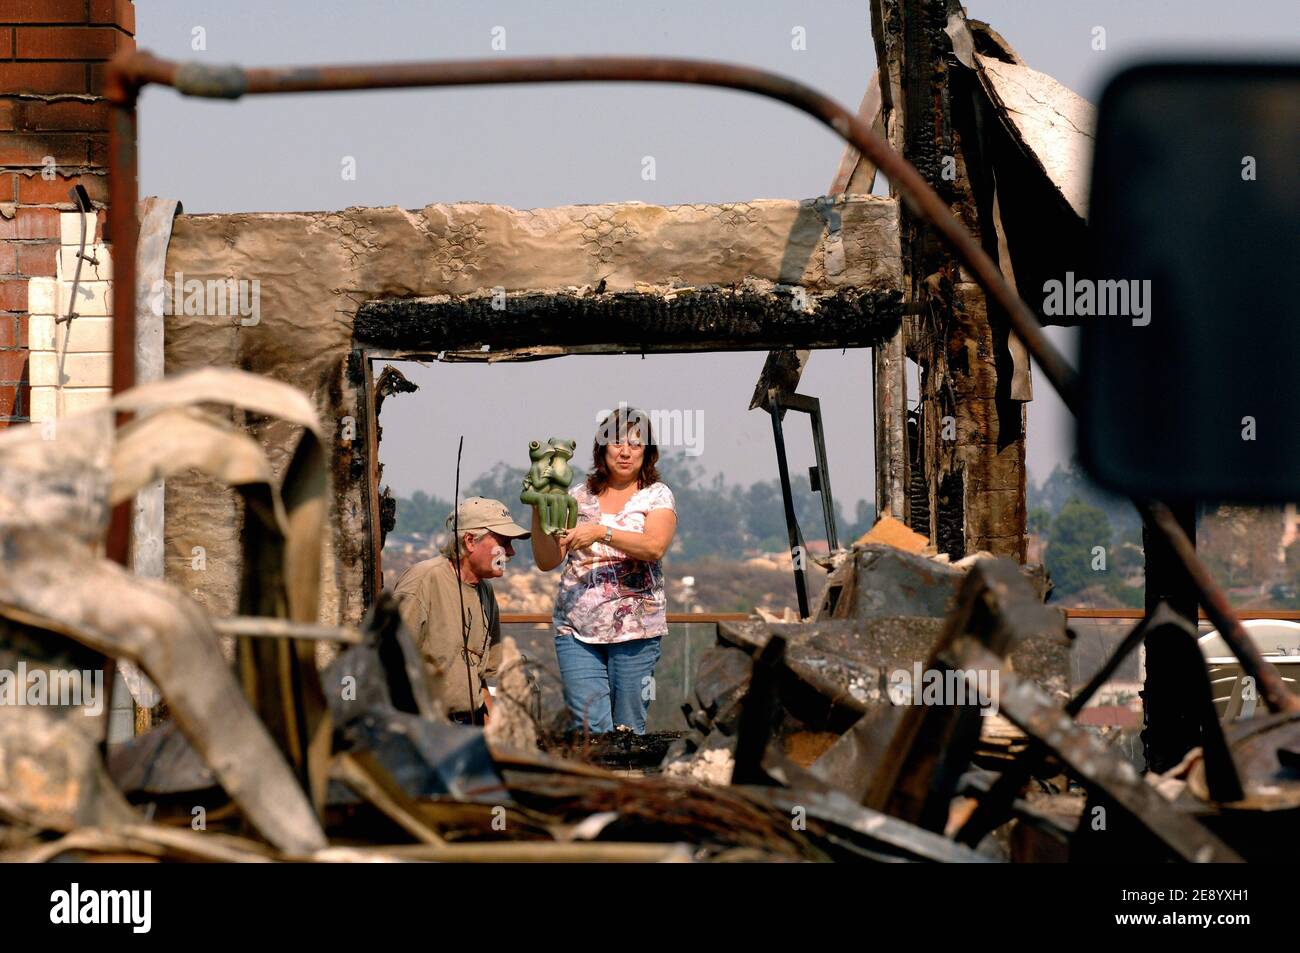 Jim Freitse está en lágrimas en medio de su casa destruida ubicada en el  barrio casi completamente quemado de Rancho Bernardo, al noreste de San  Diego, CA, EE.UU. El 25 de octubre